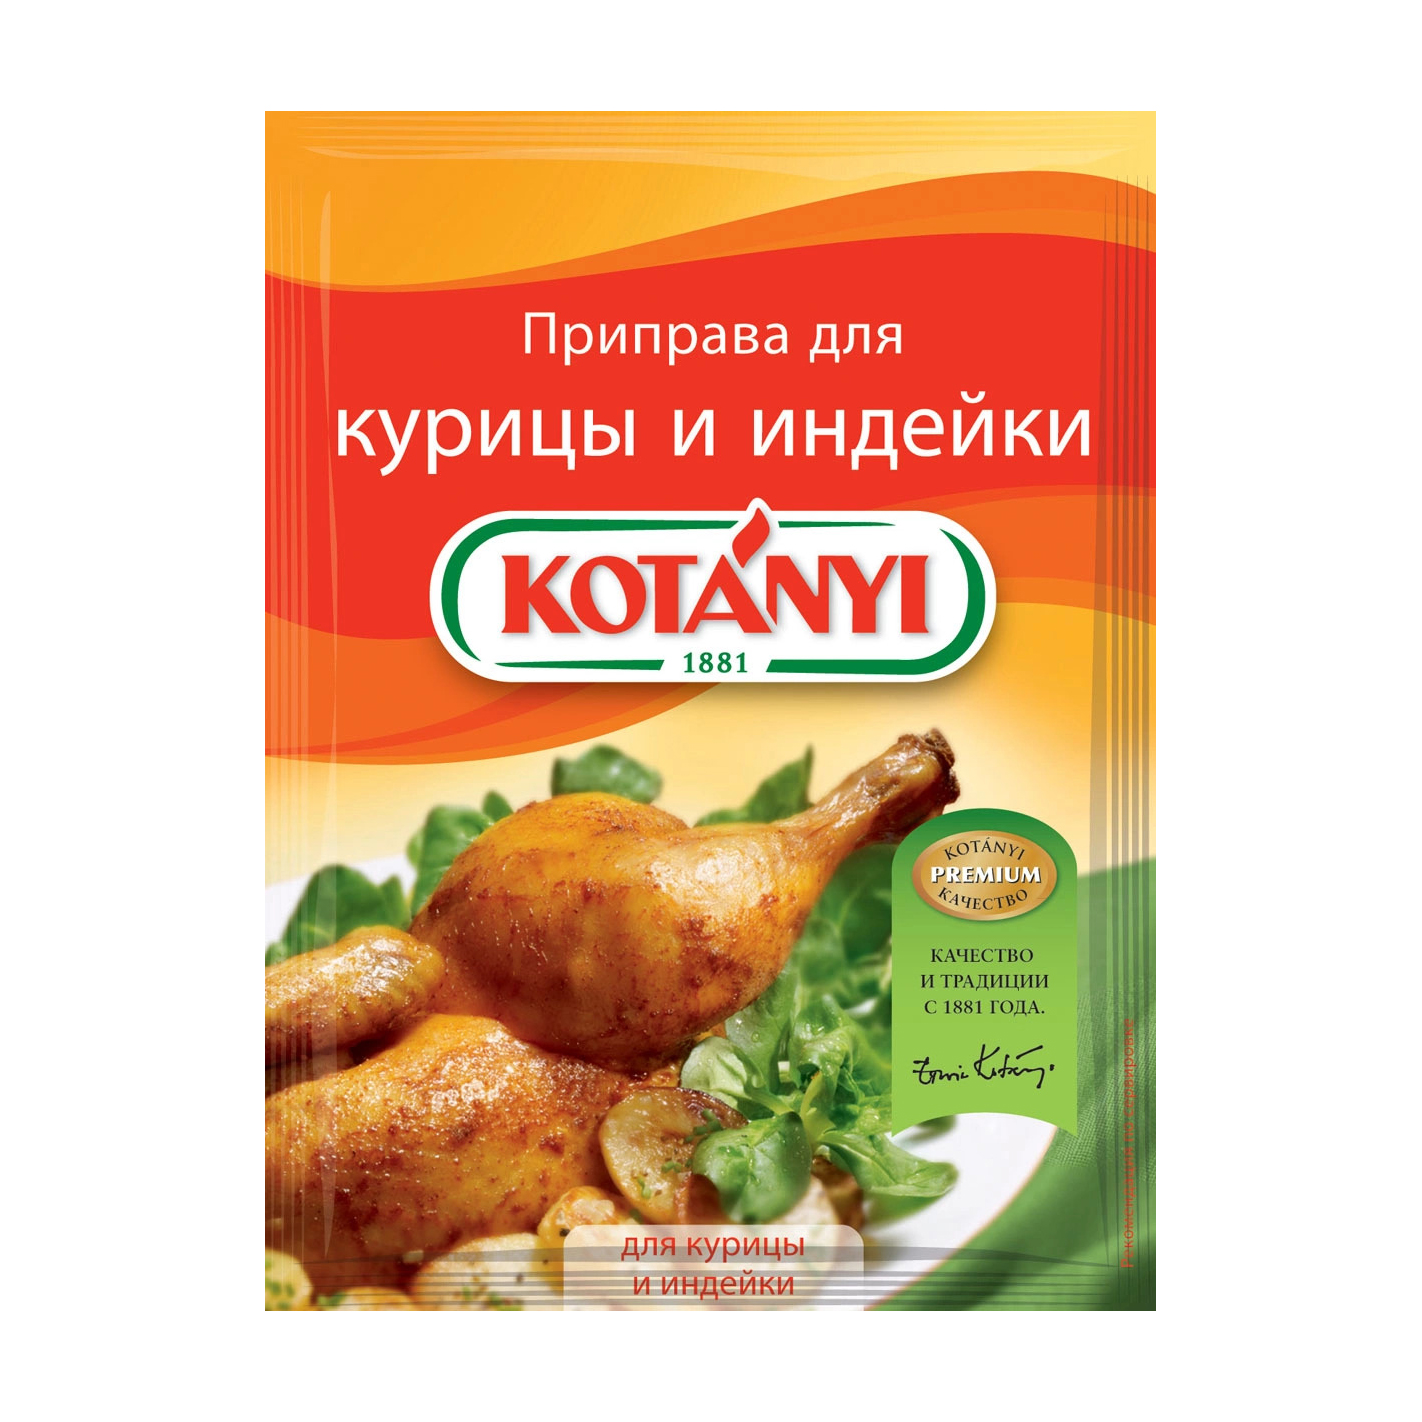 Приправа Kotanyi для курицы и индейки 30 г приправа kotanyi для глинтвейна и пунша 10 г